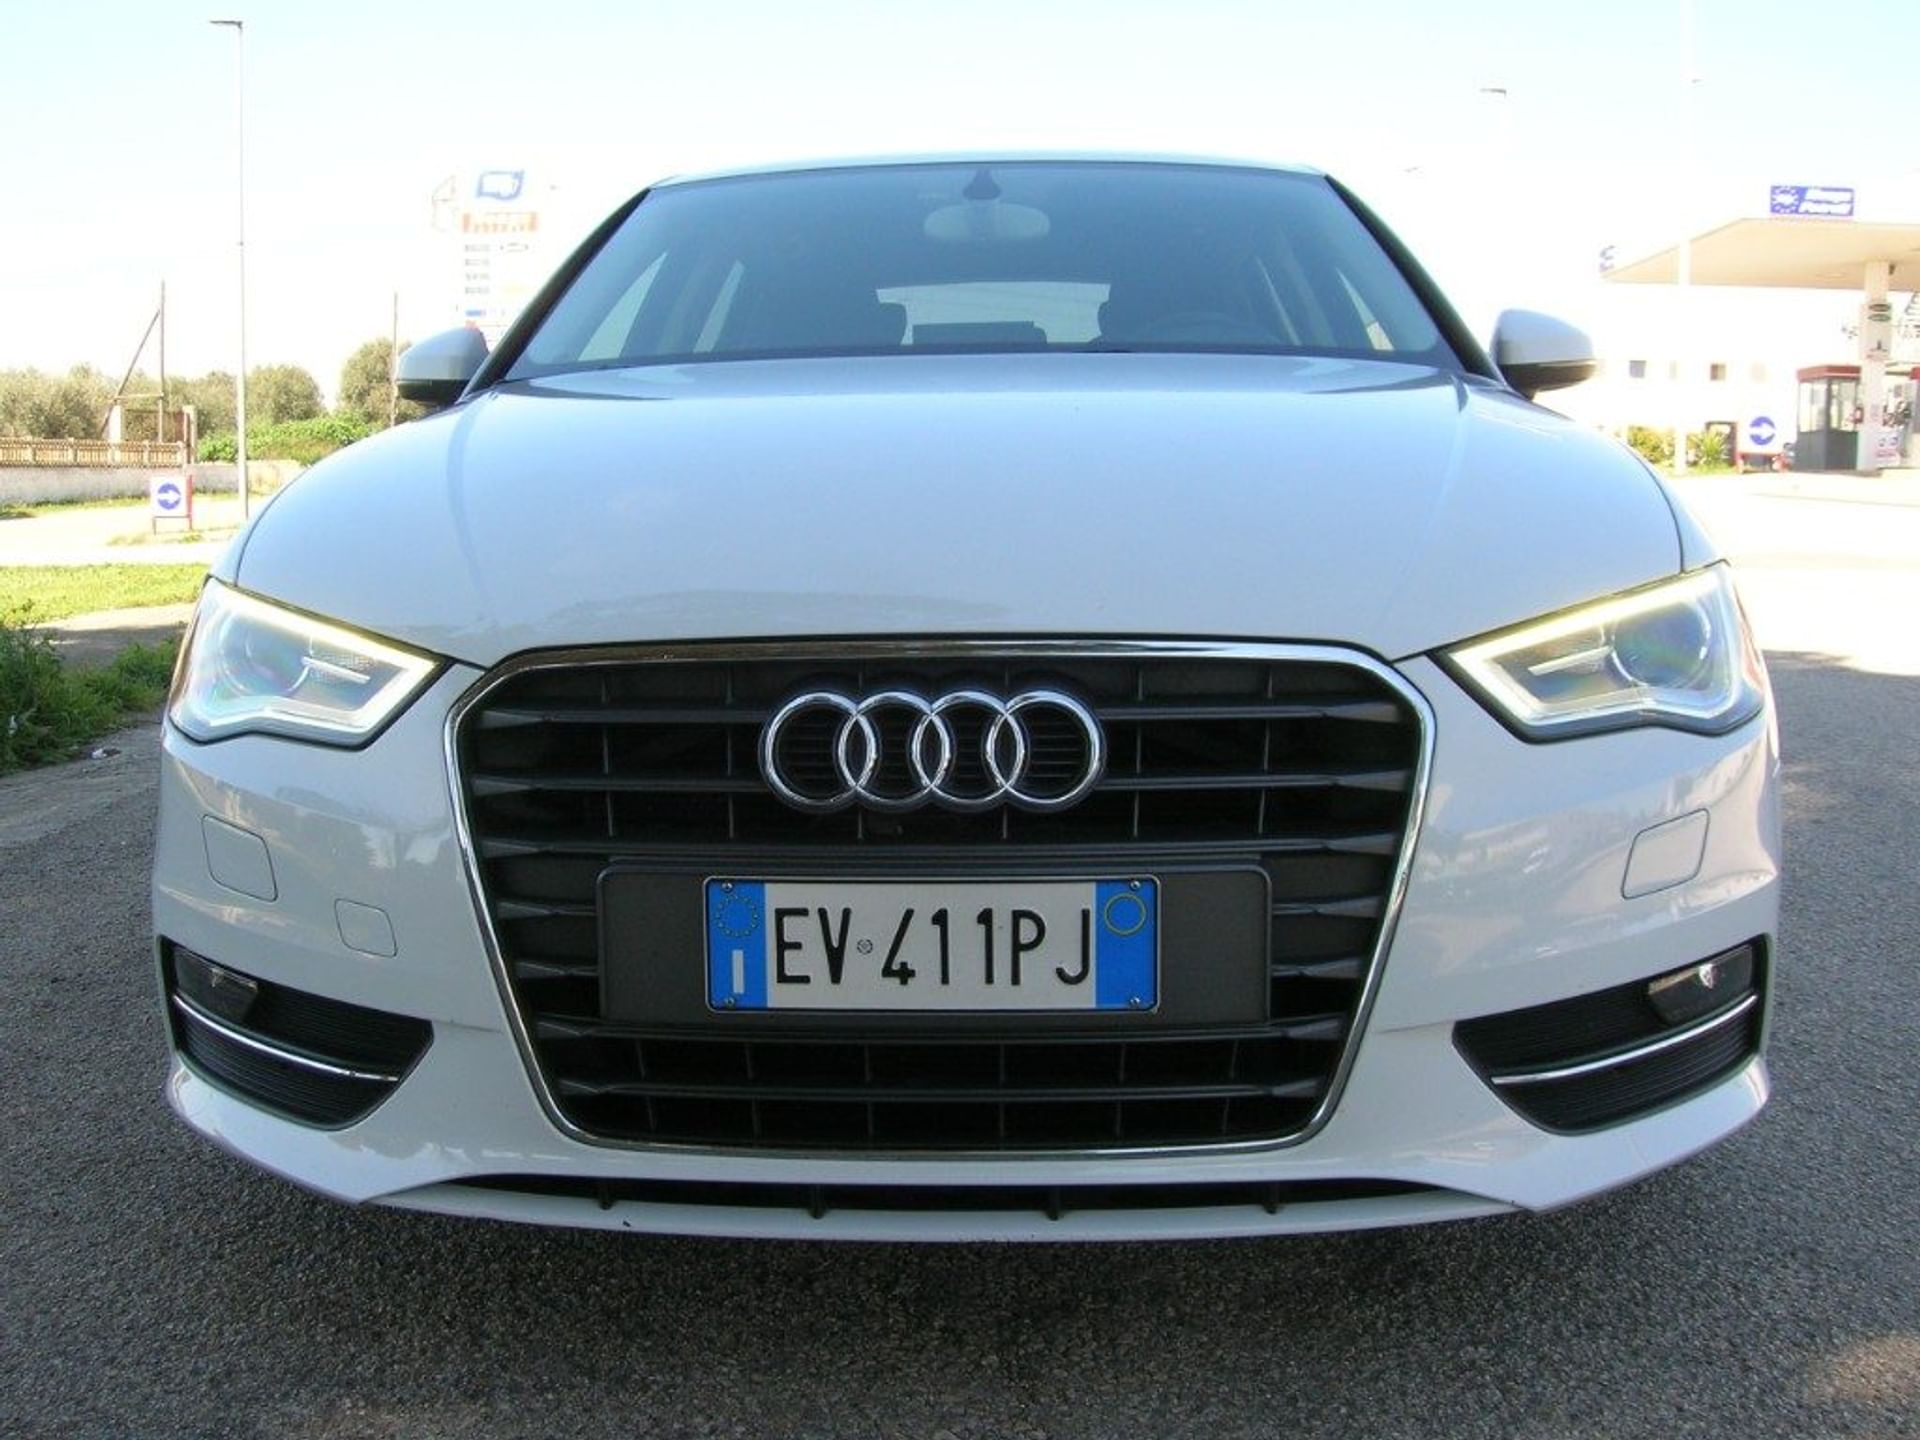 Audi 1.6 TDI - Anteriore